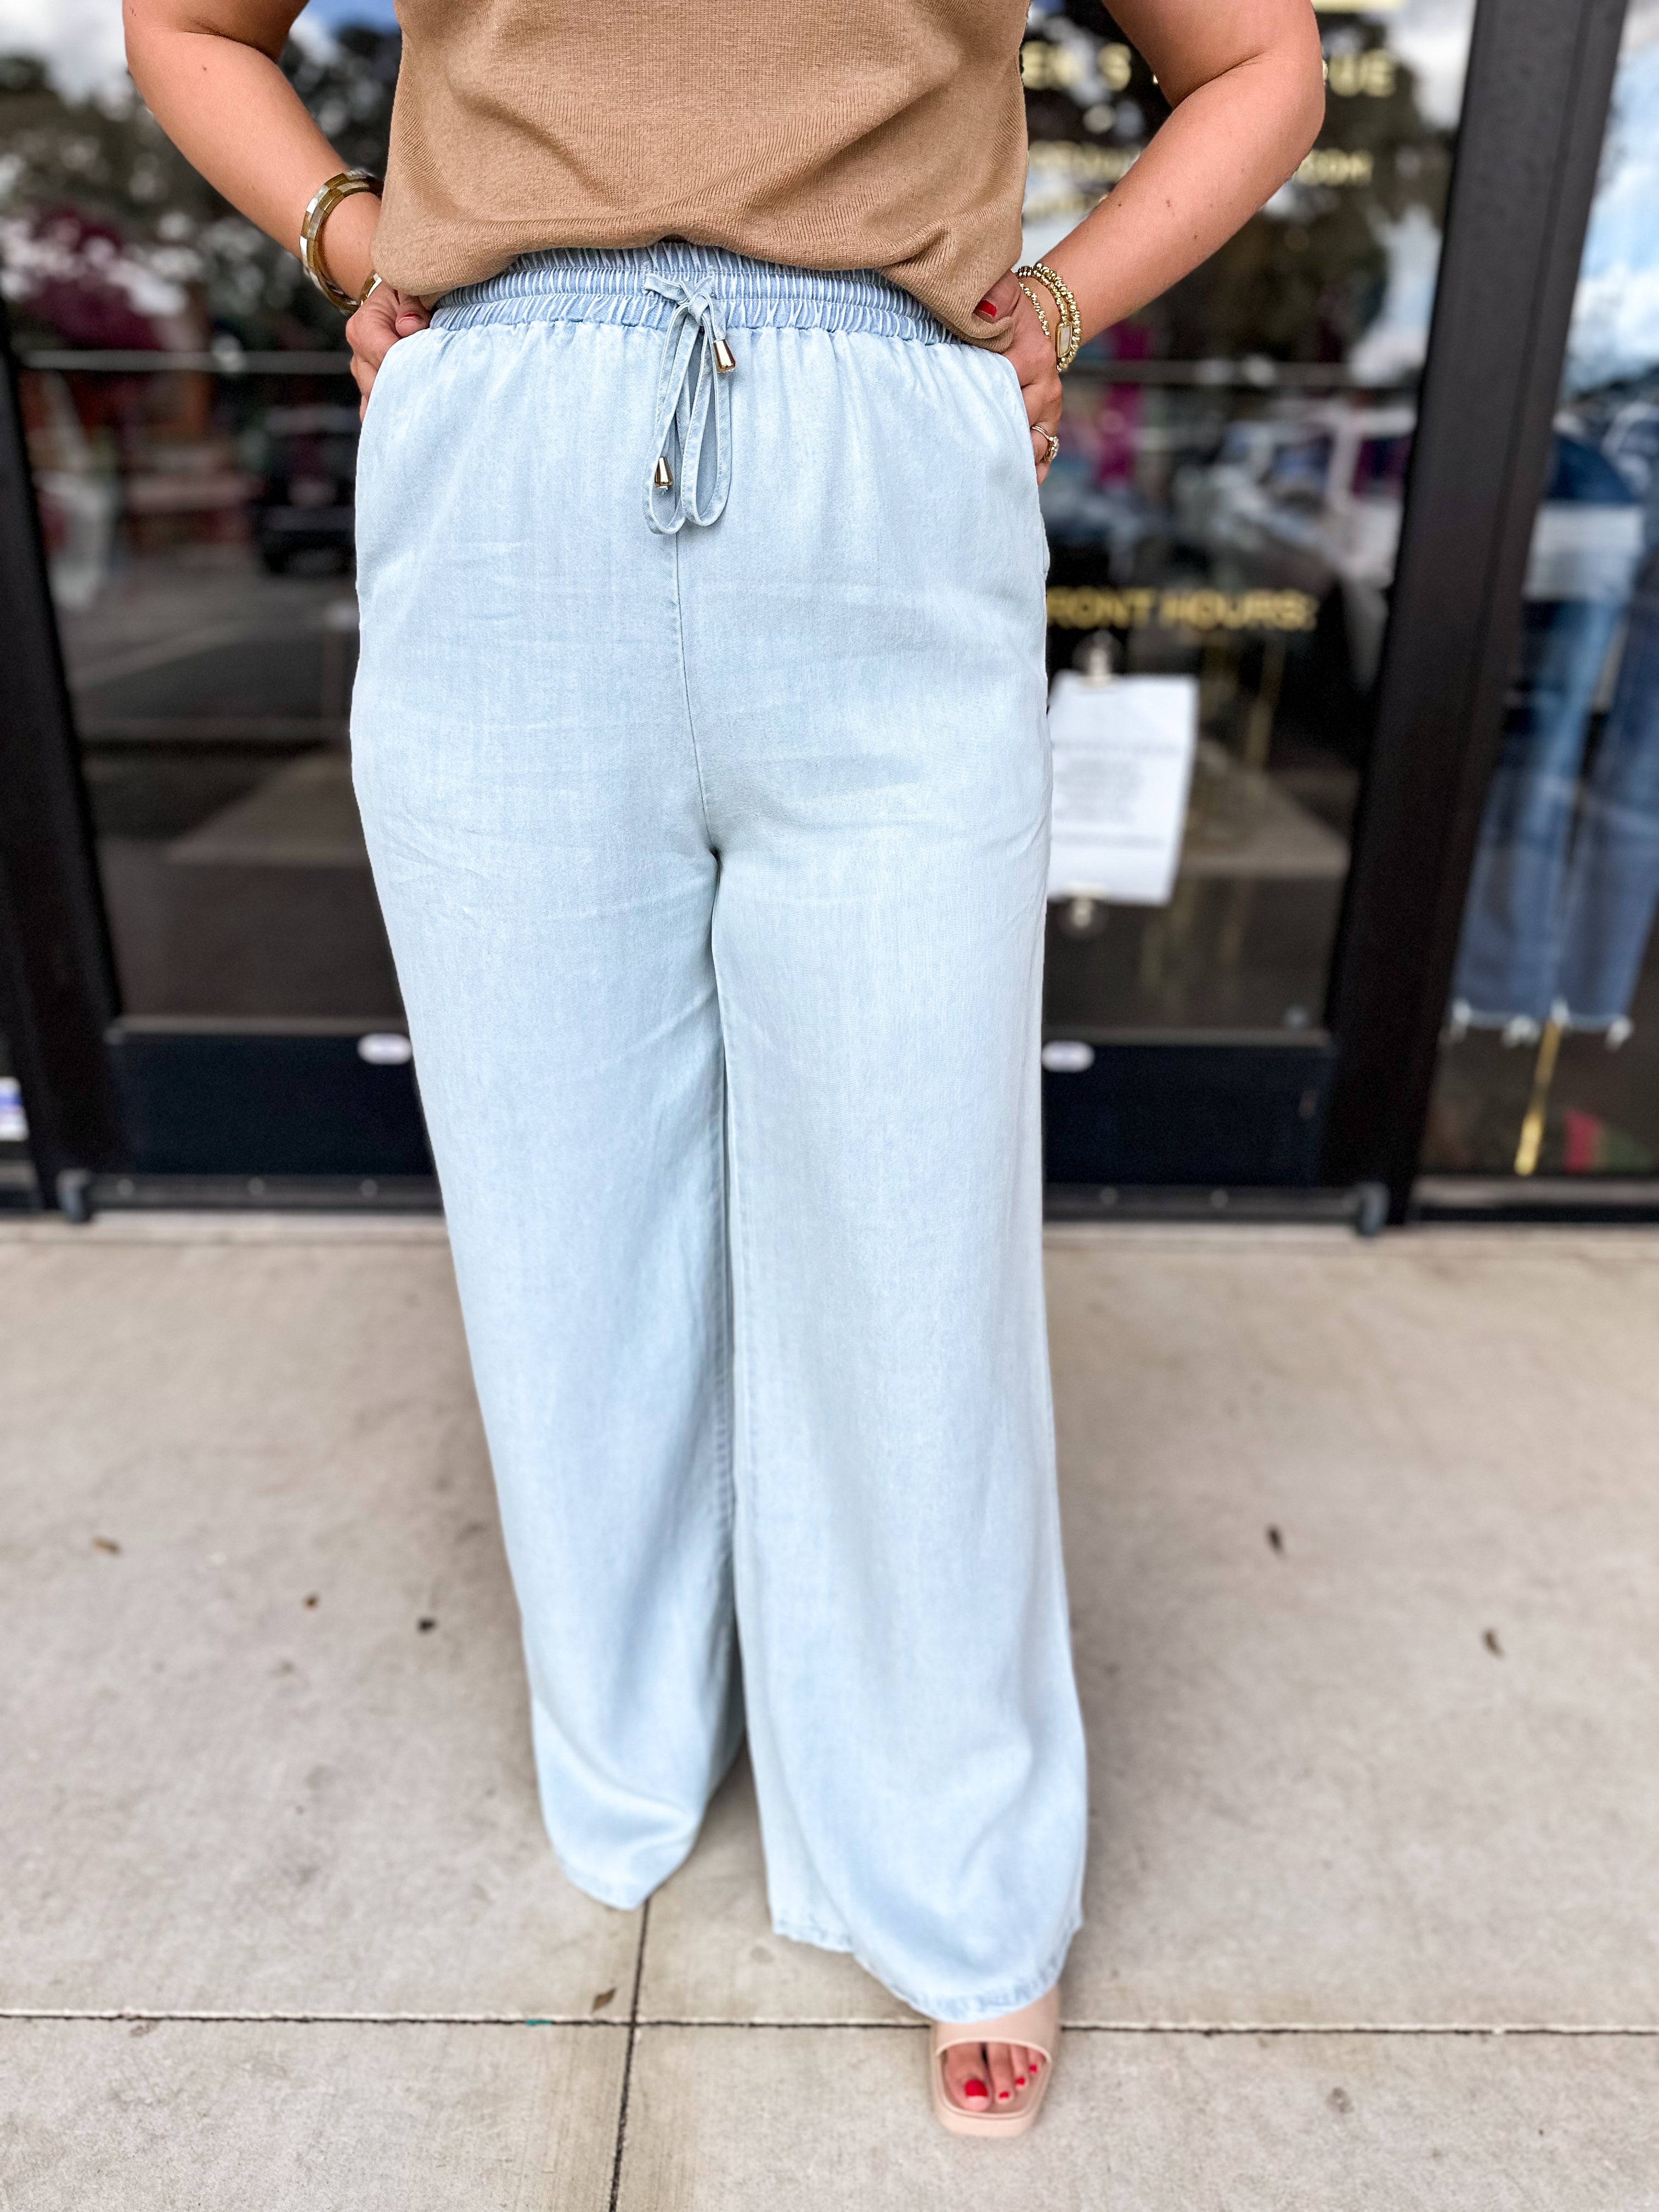 Louie Denim Pants-400 Pants-ALLIE ROSE-July & June Women's Fashion Boutique Located in San Antonio, Texas